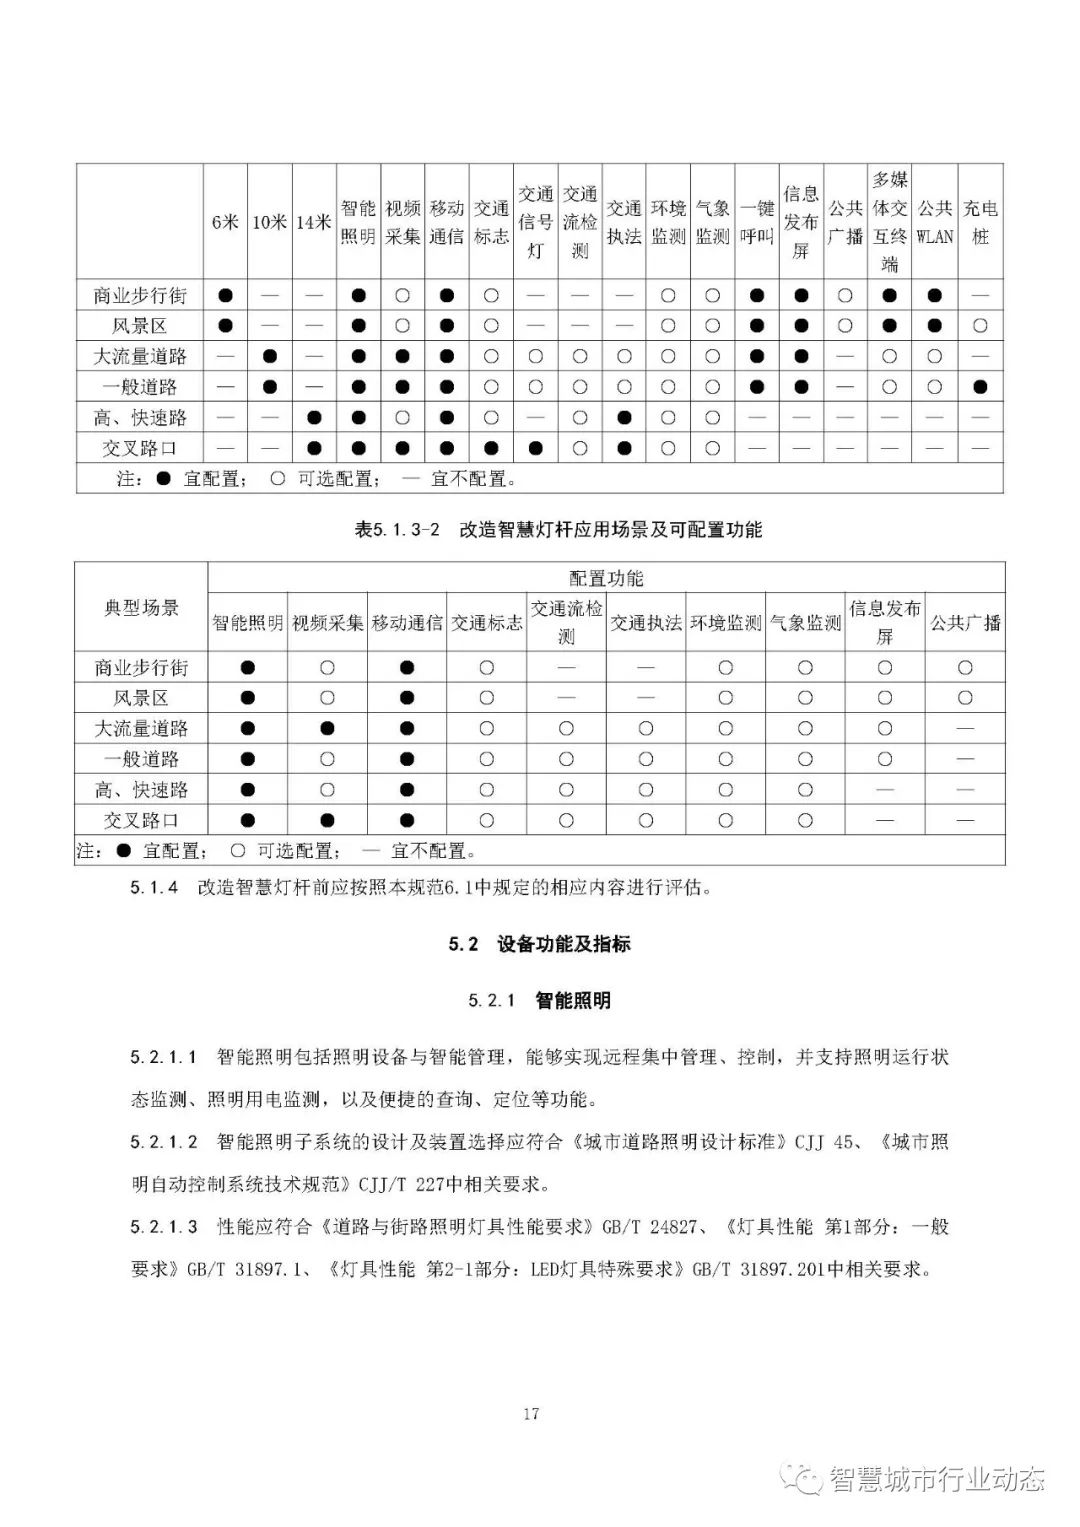 江西省发布智慧杆建设技术标准（意见稿全文）